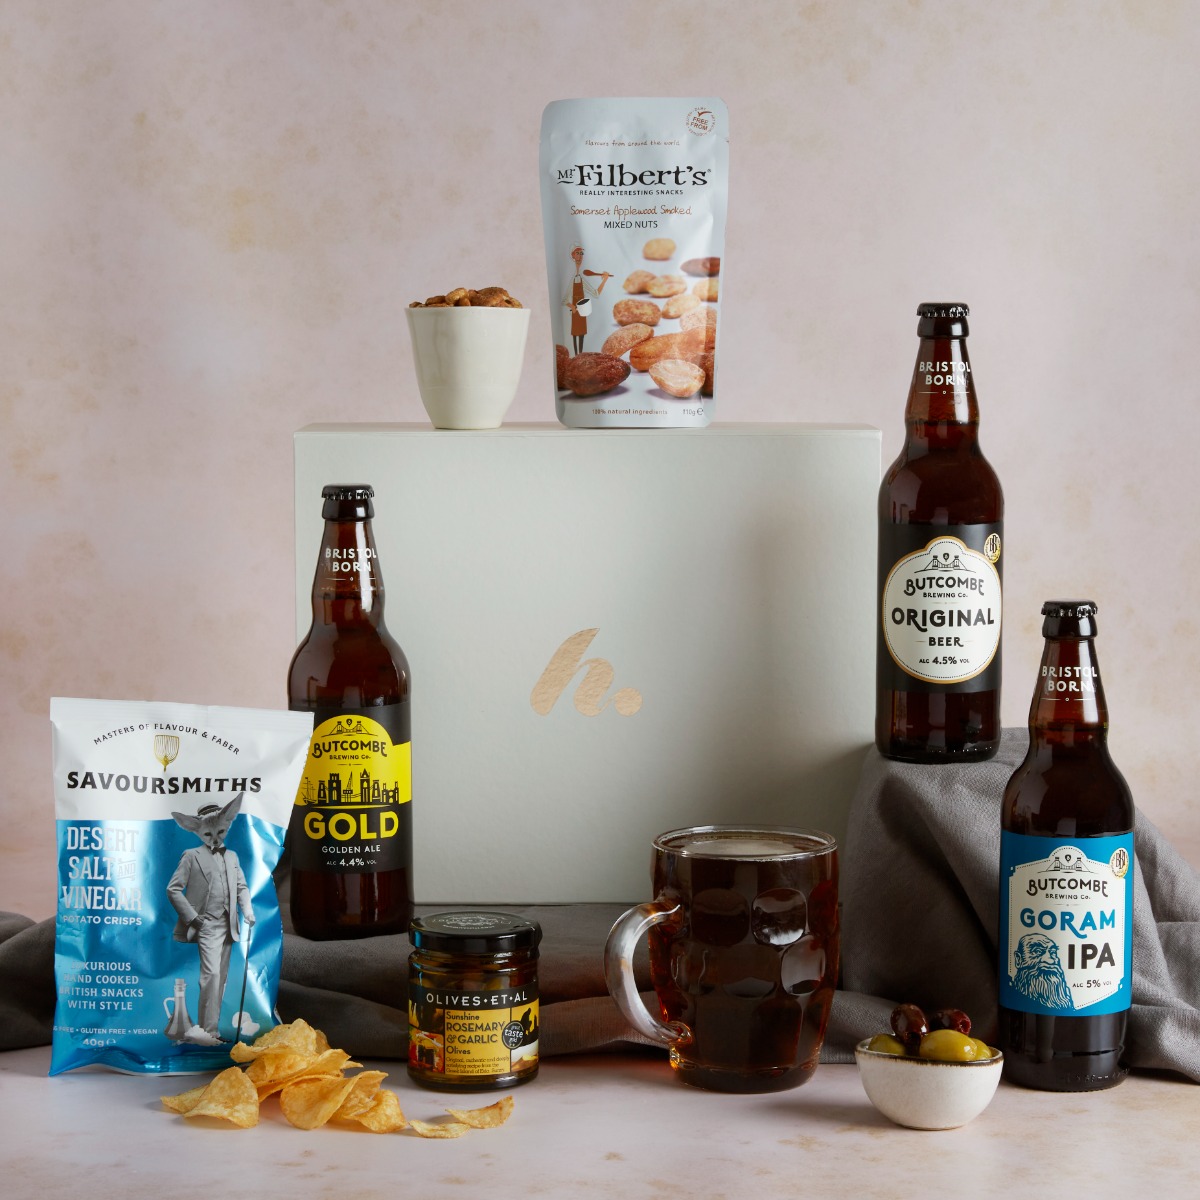 Valentine's Real Ale & Snacks Gift For Him Real Ale Beer Hampers UK Hampers.com